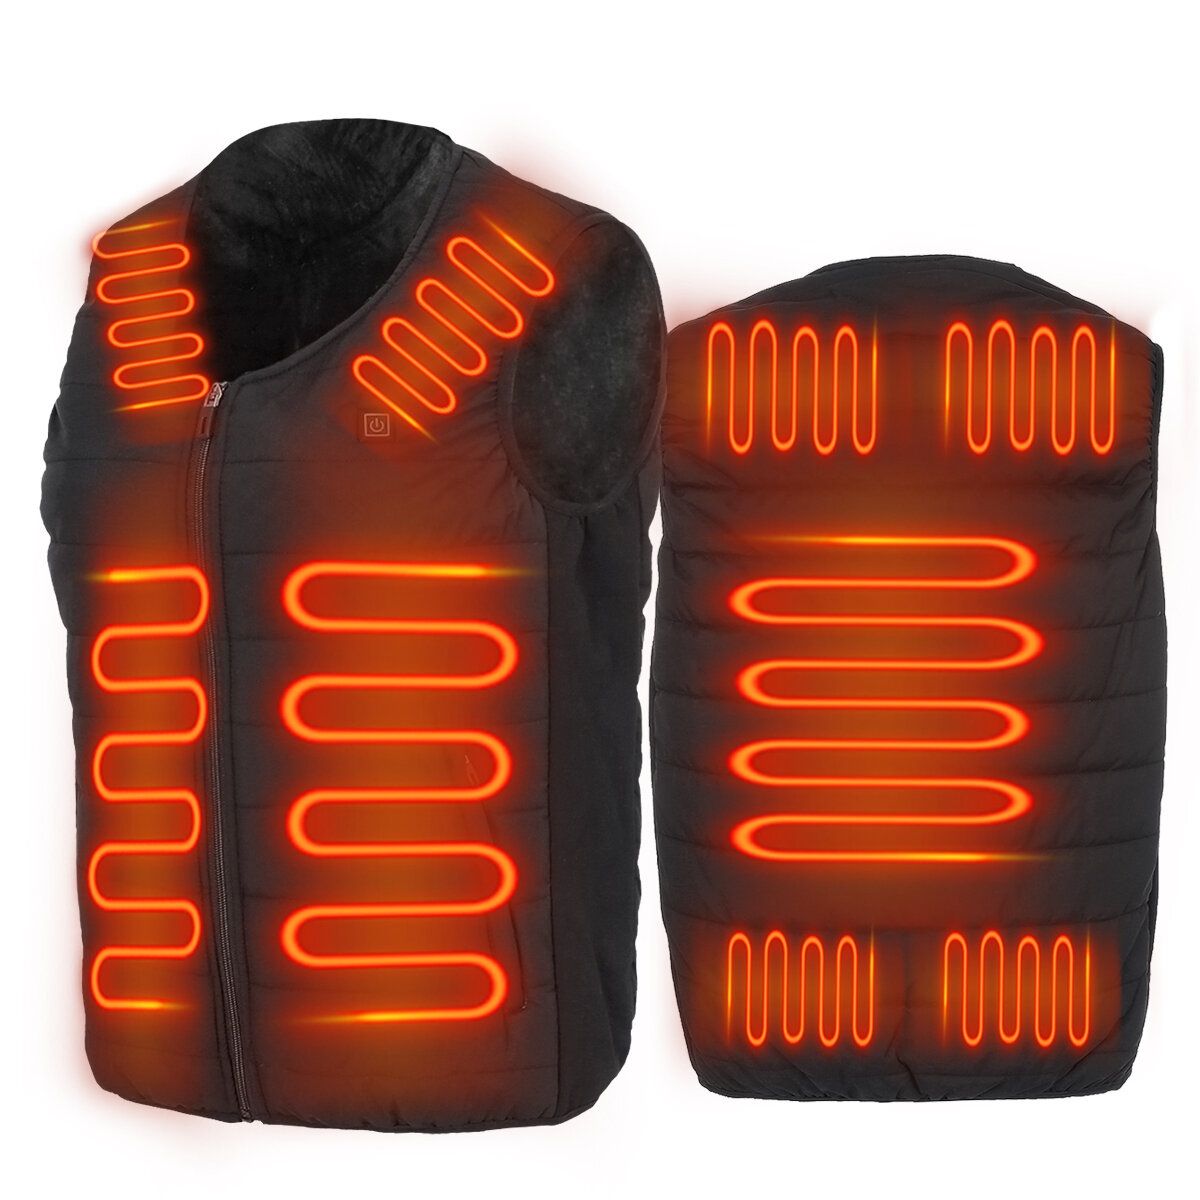 

Унисекс, электрический жилет с 9 зонами обогрева, куртка с подогревом, USB, зимнее спортивное пальто, термобелье